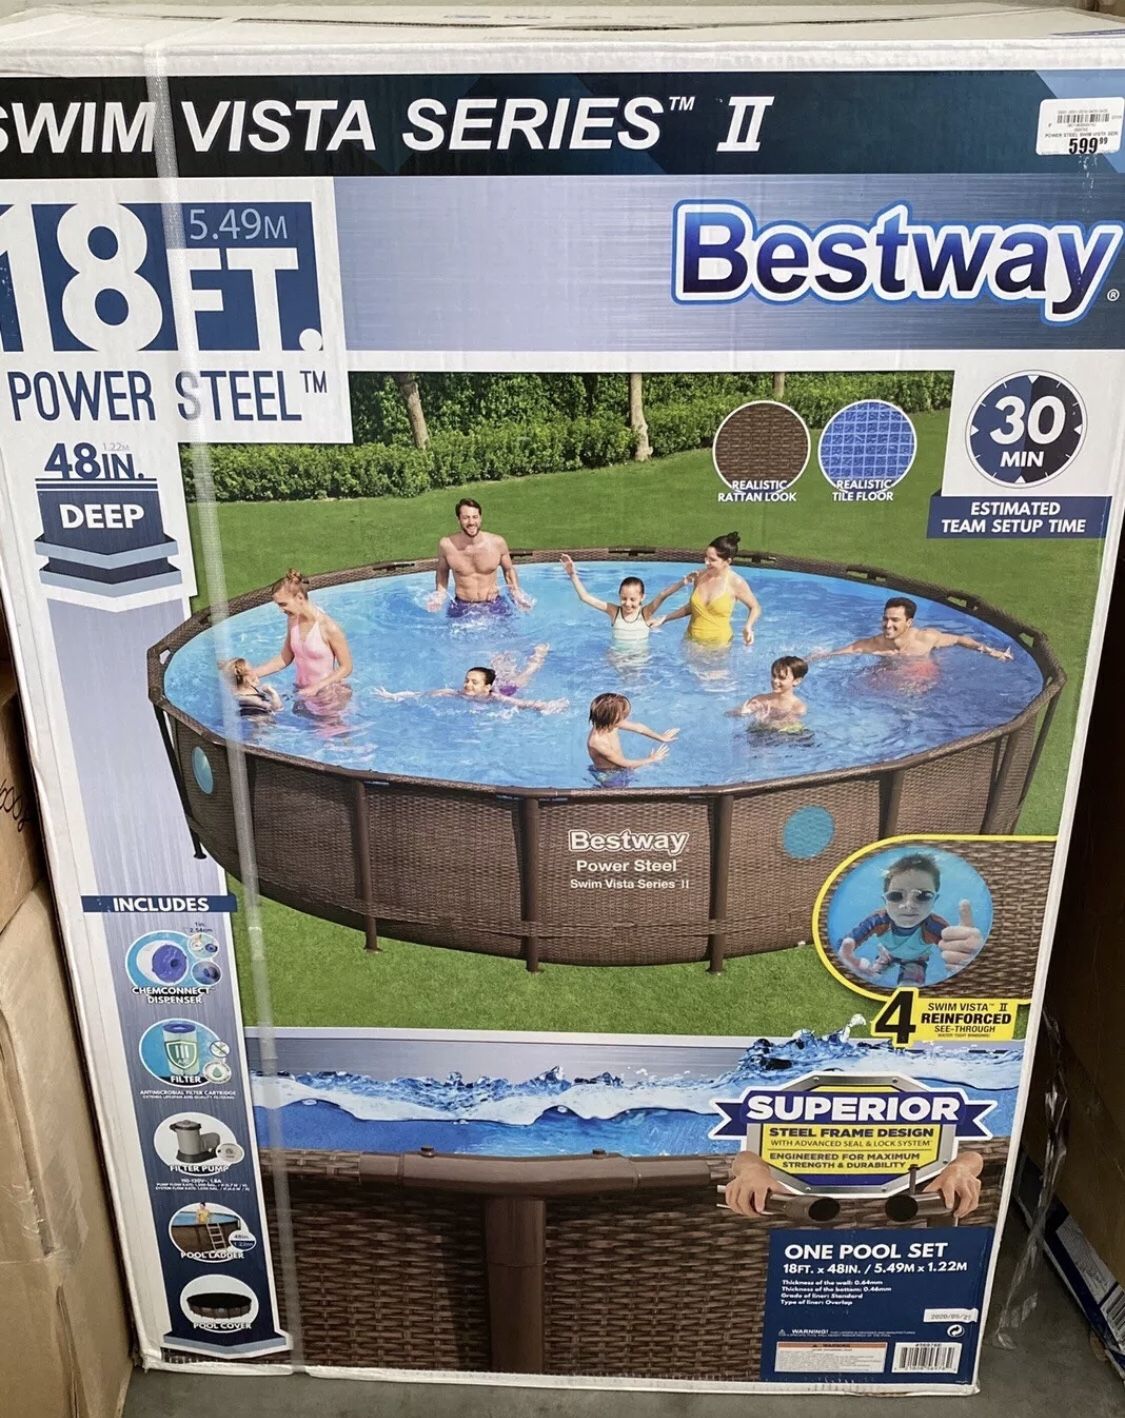 Bestway 18' x 48" Power Steel Swim Vista Series II Swimming Pool